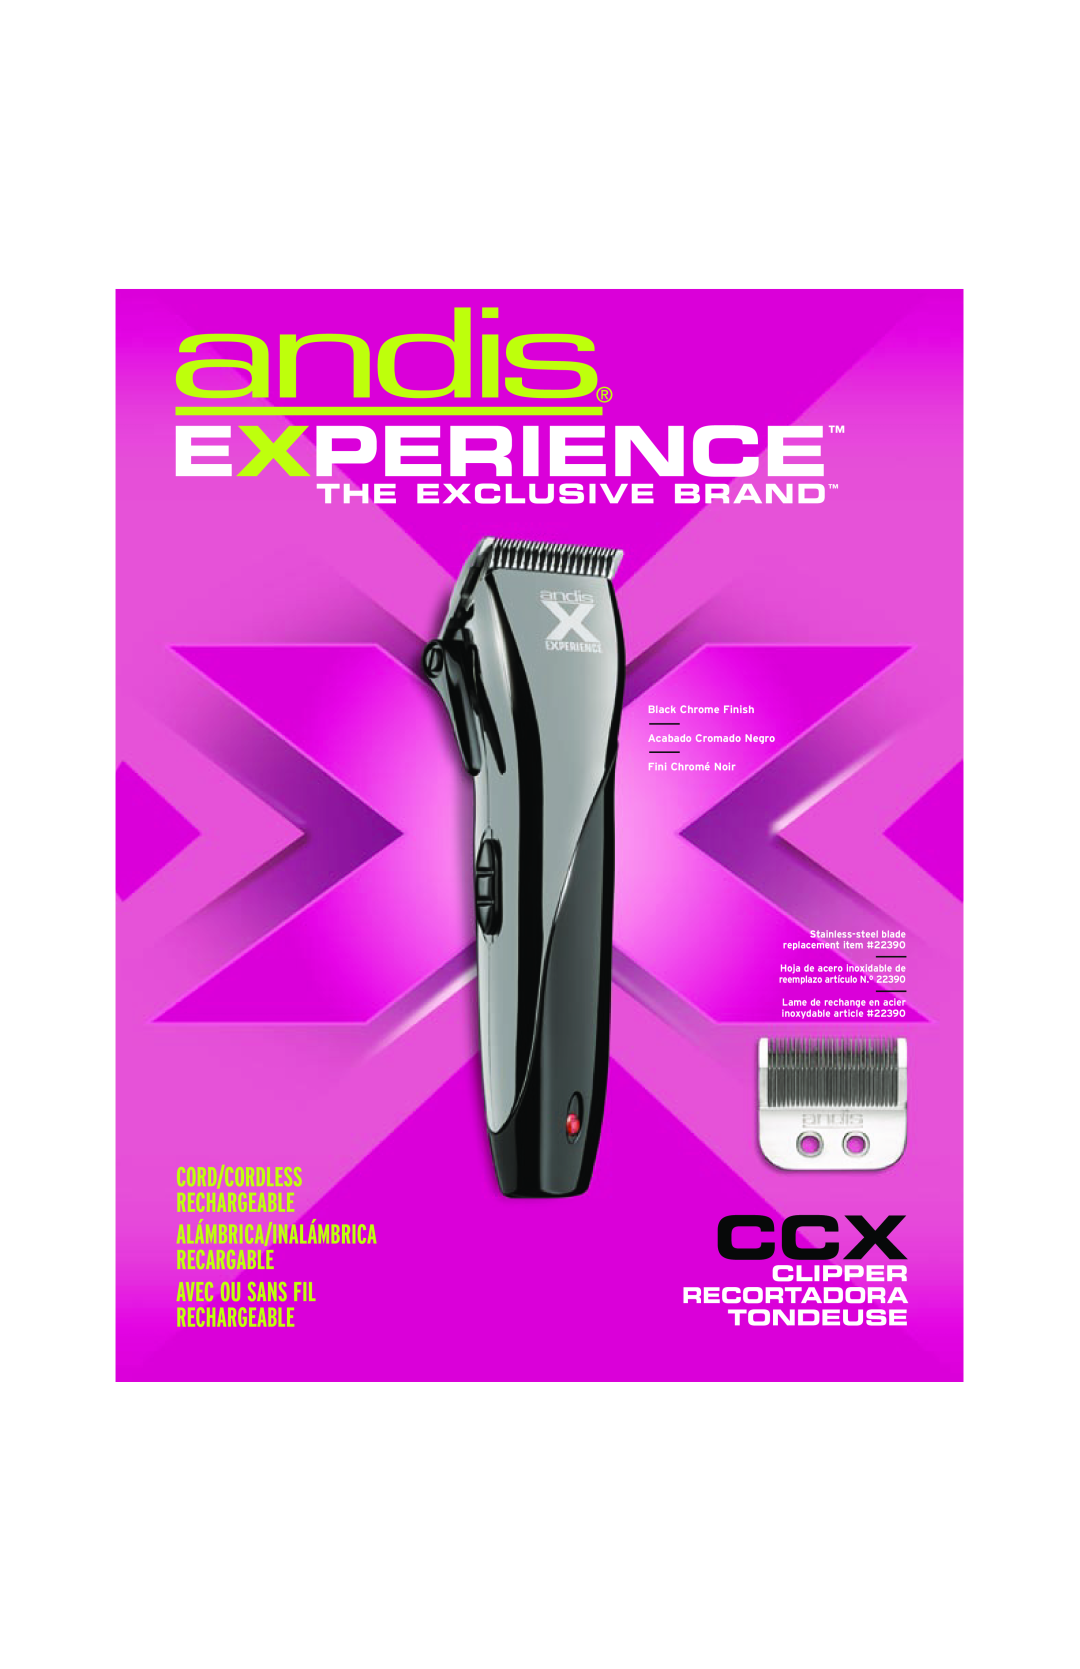 Andis Company Hair Clipper manual Experience, Cord/Cordless Rechargeable, Alámbrica/Inalámbrica, Recargable, Recortadora 